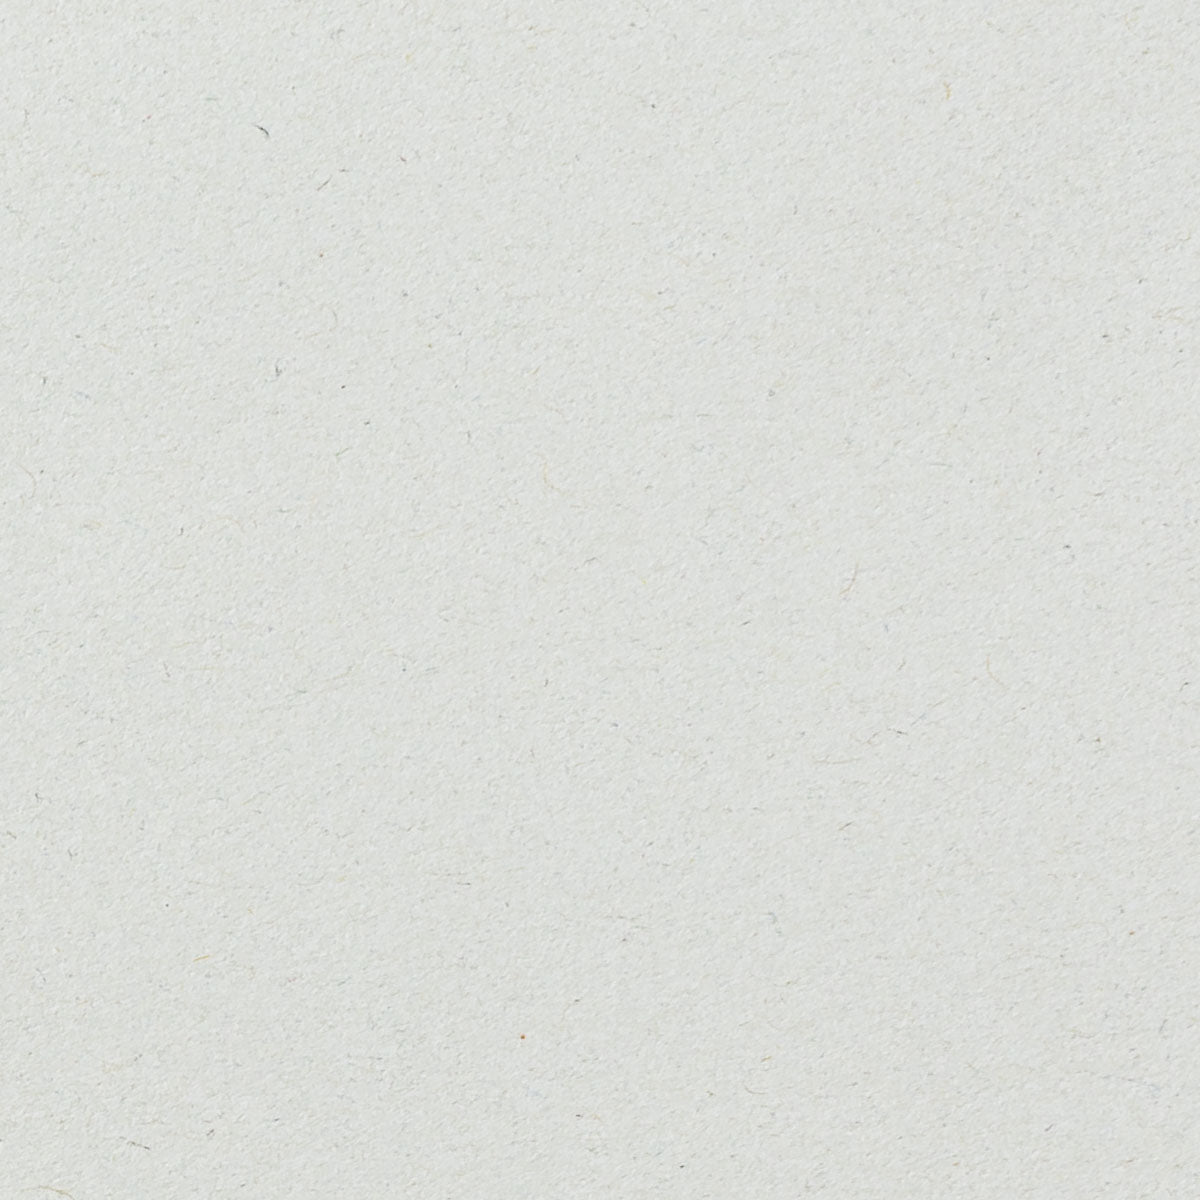 Risma da 20 fg C4 di Cartone Bianco liscio 100% Riciclato - 250gsm - Manamant Paper Tales -FGB931700M2F